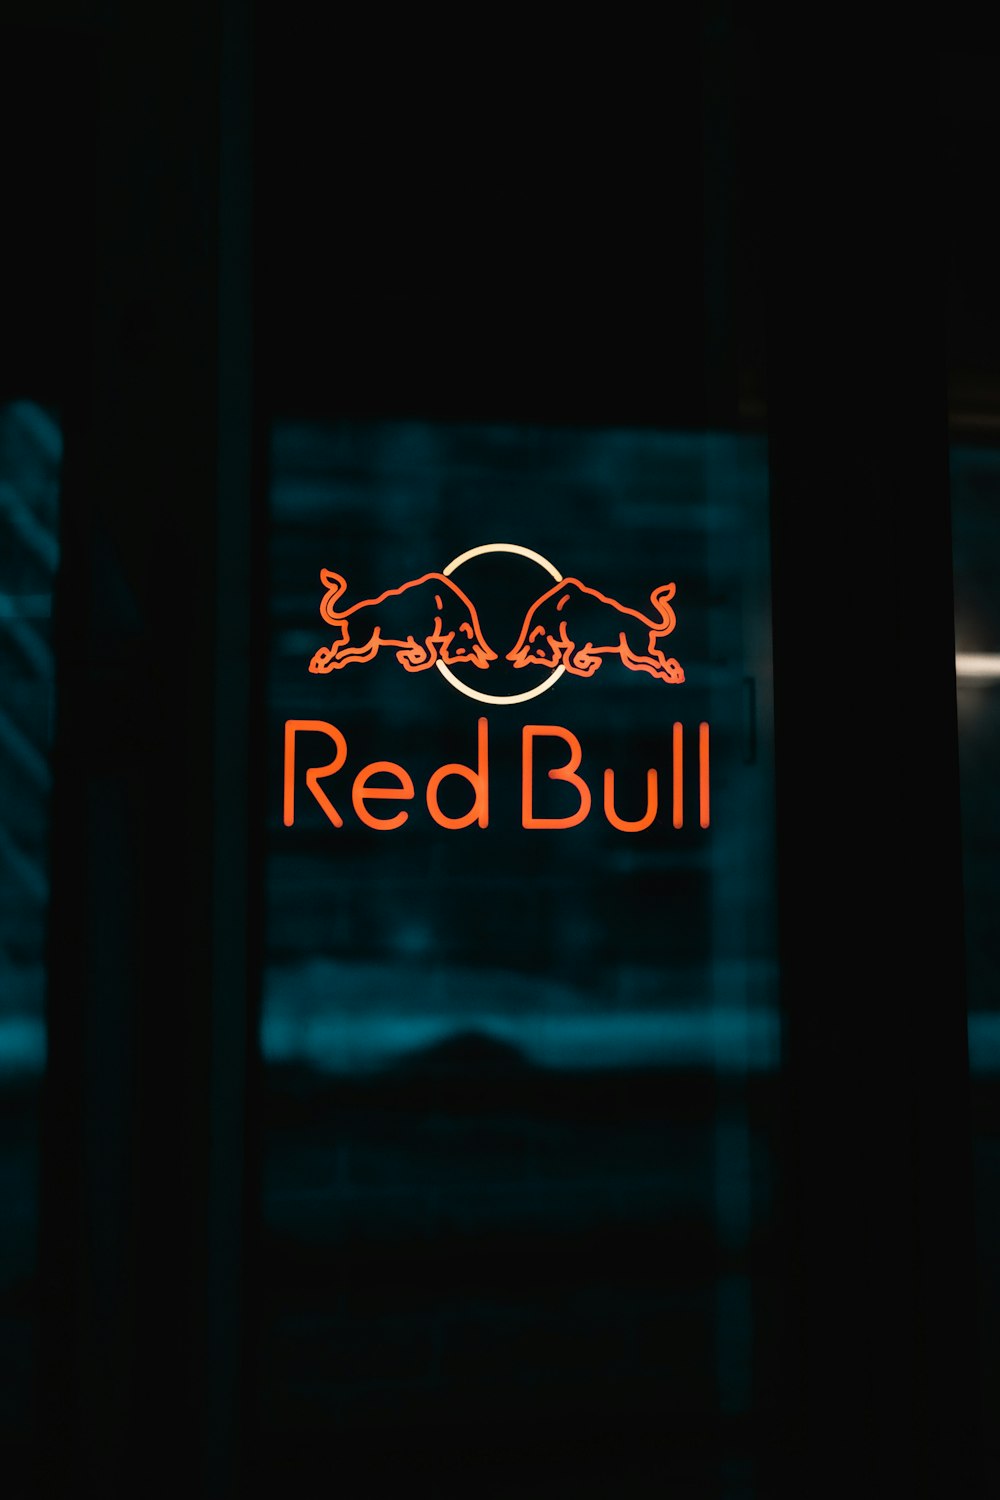 Un letrero rojo de Bull se ilumina en la oscuridad